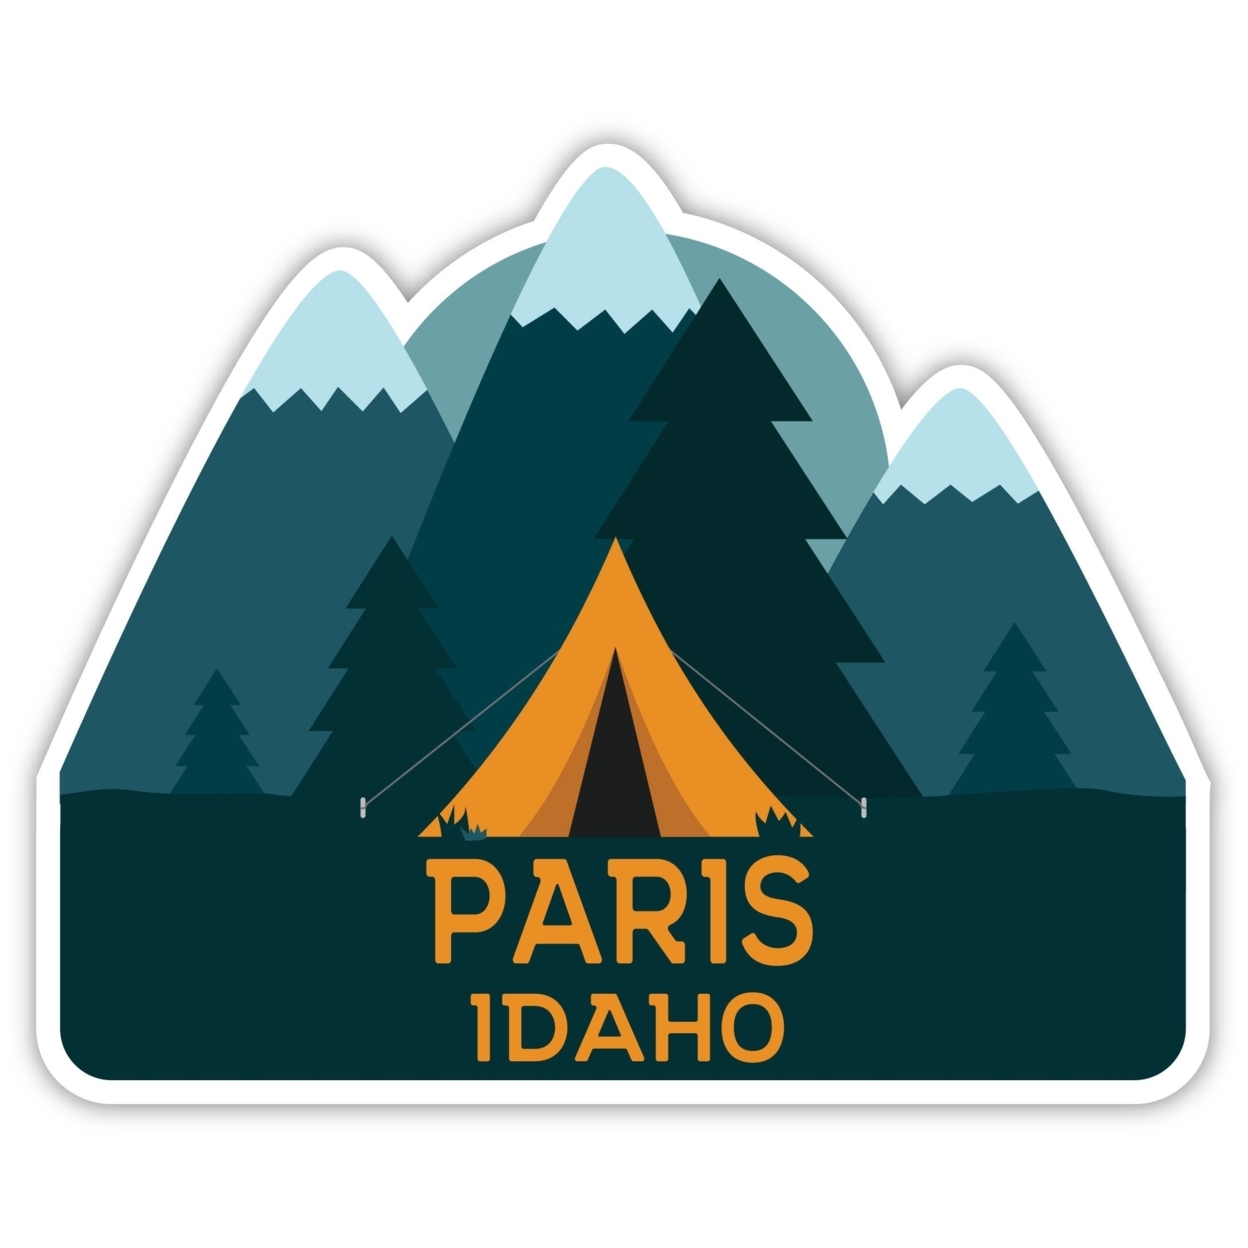 Paris Idaho Souvenir Decorative Stickers (Choose Theme And Size) - Single Unit, 2-Inch, Tent